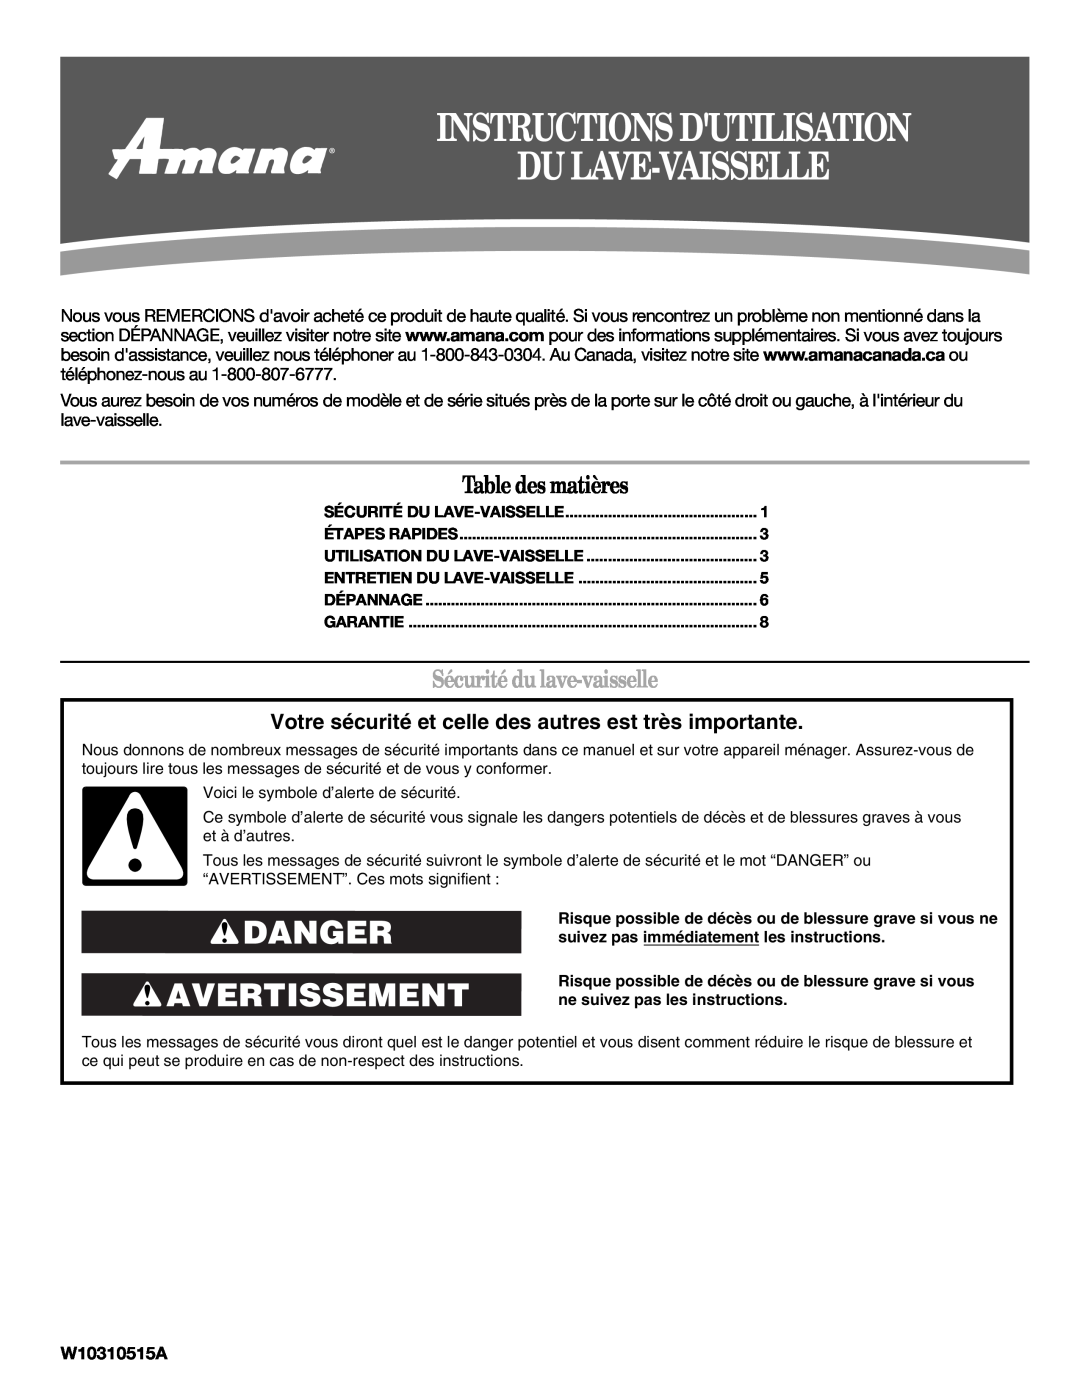 Amana W10310515A warranty Instructions Dutilisation Du Lave-Vaisselle, Danger Avertissement, Table des matières 